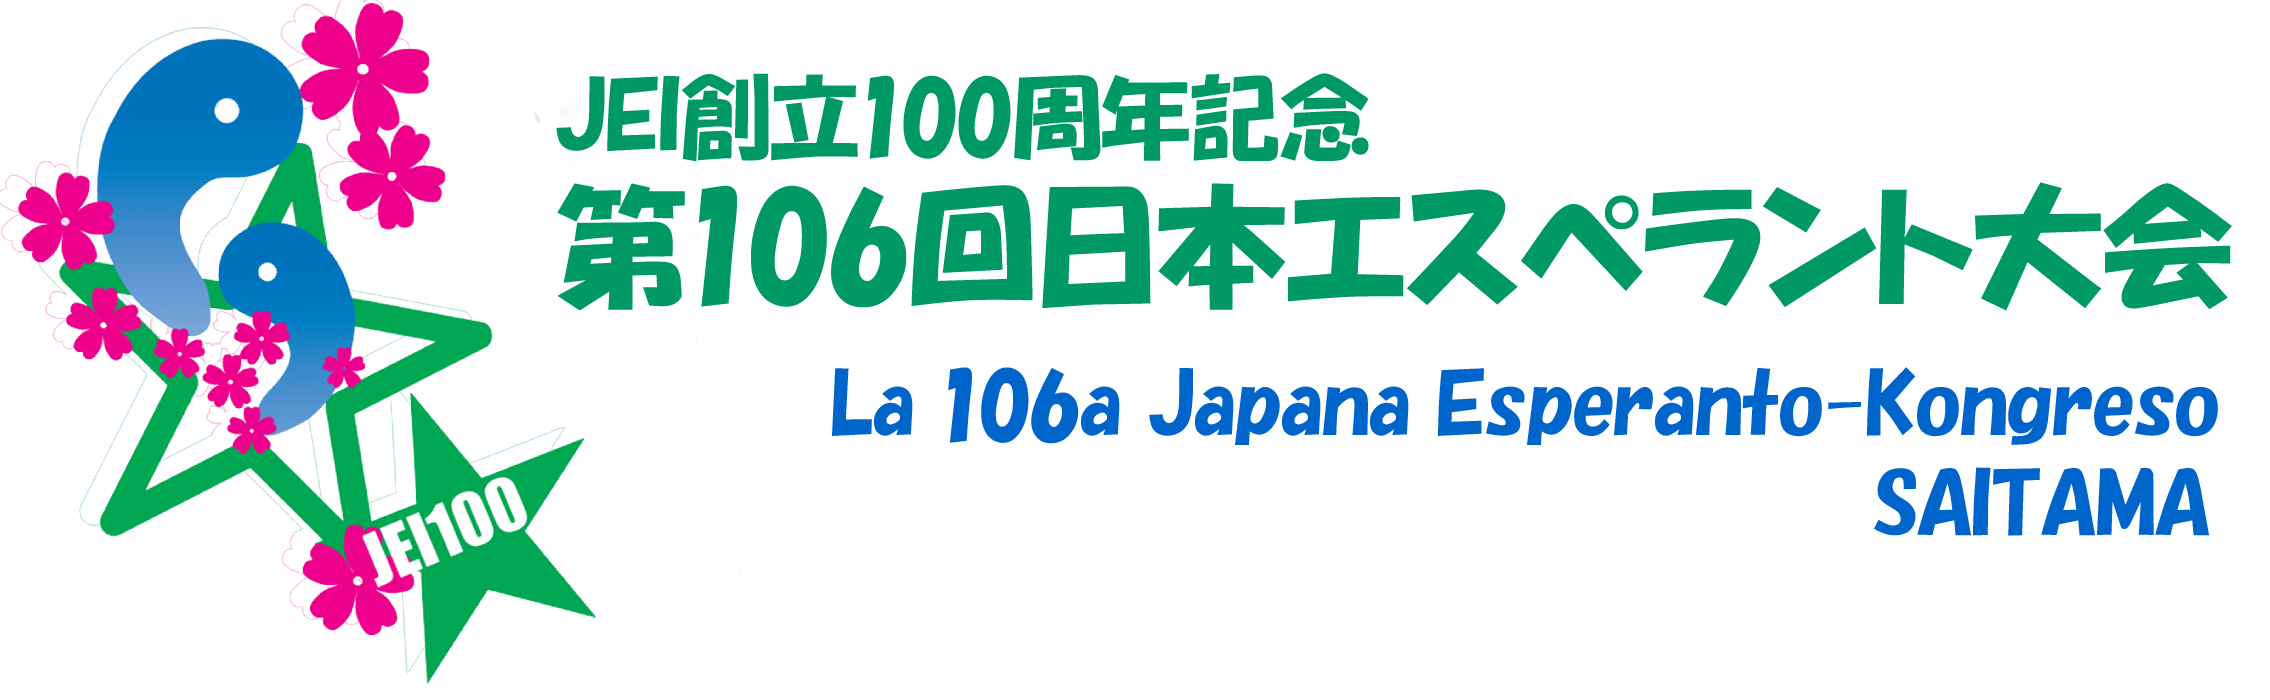 La 106a Japana Esperanto-Kongreso